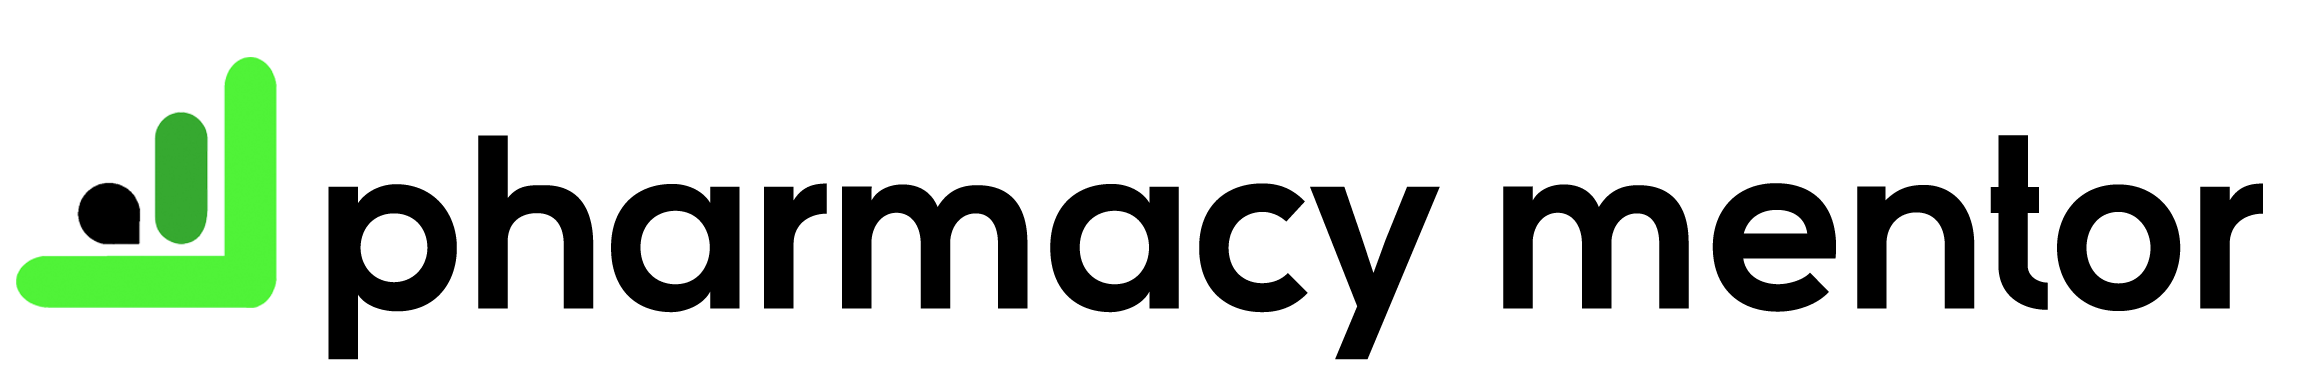 pharmacy-mentor-official-logo